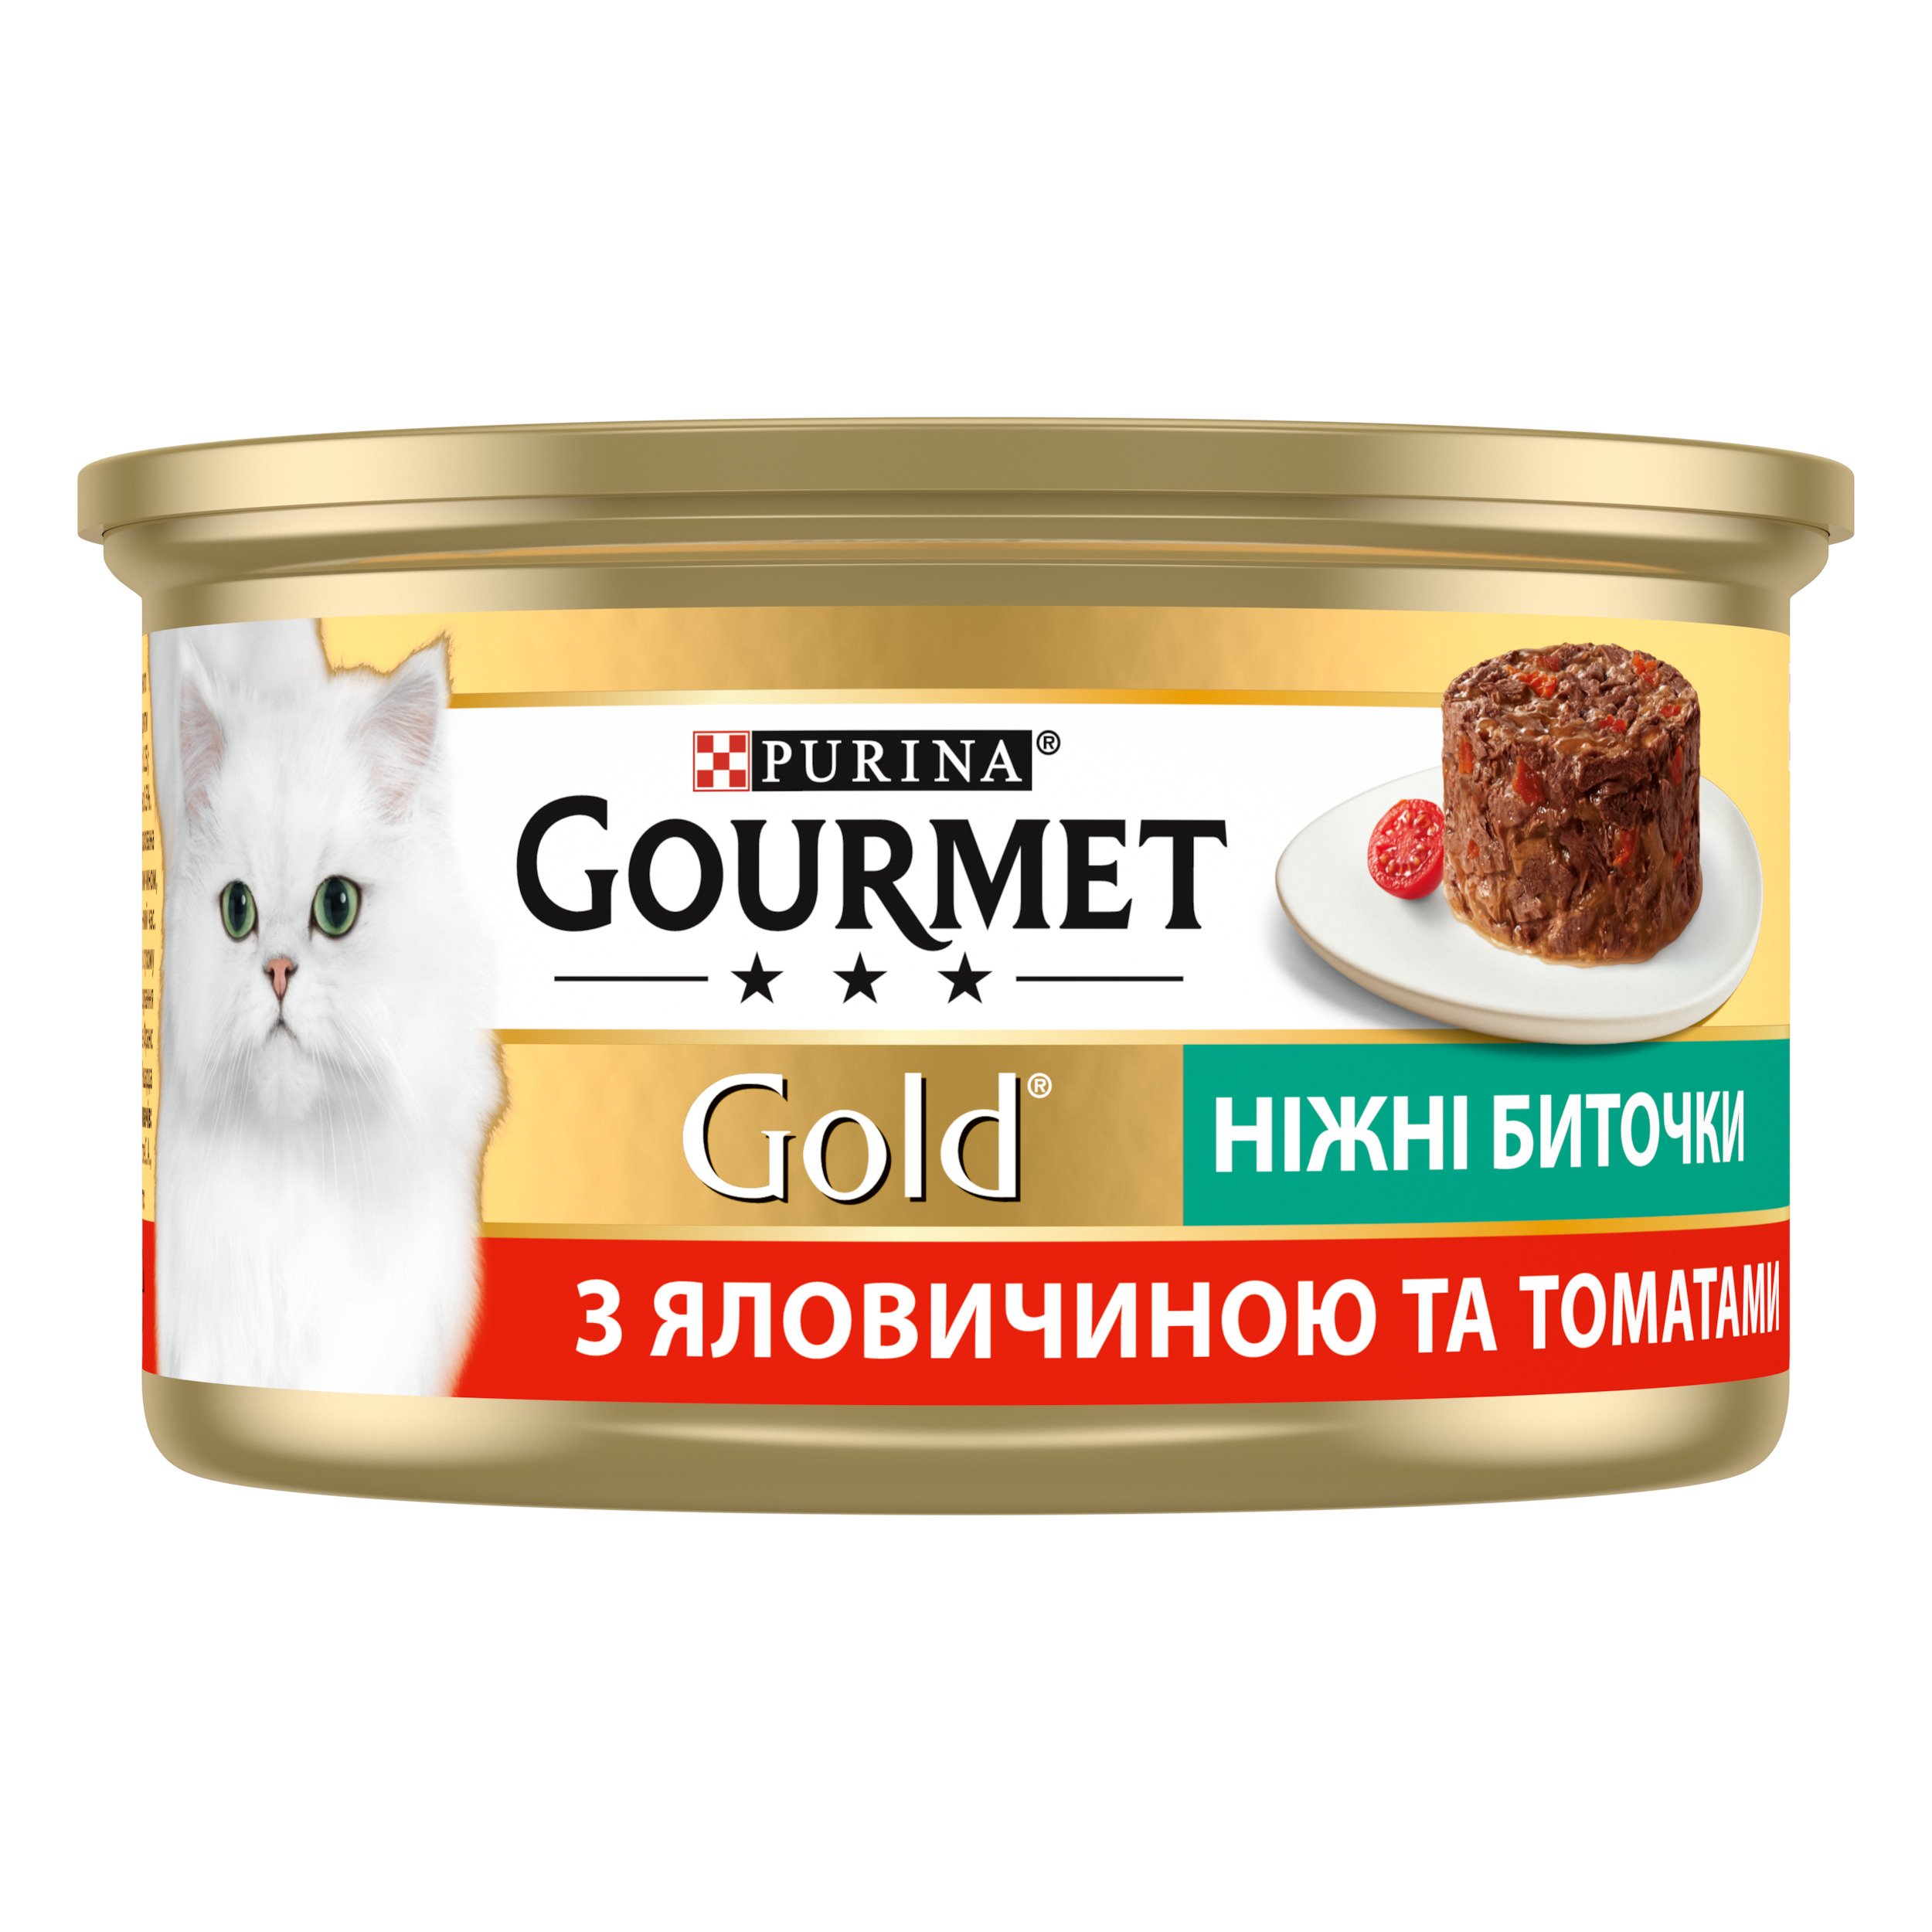 Влажный корм для кошек Gourmet Нежные биточки, с говядиной и томатами, 85 г - фото 3